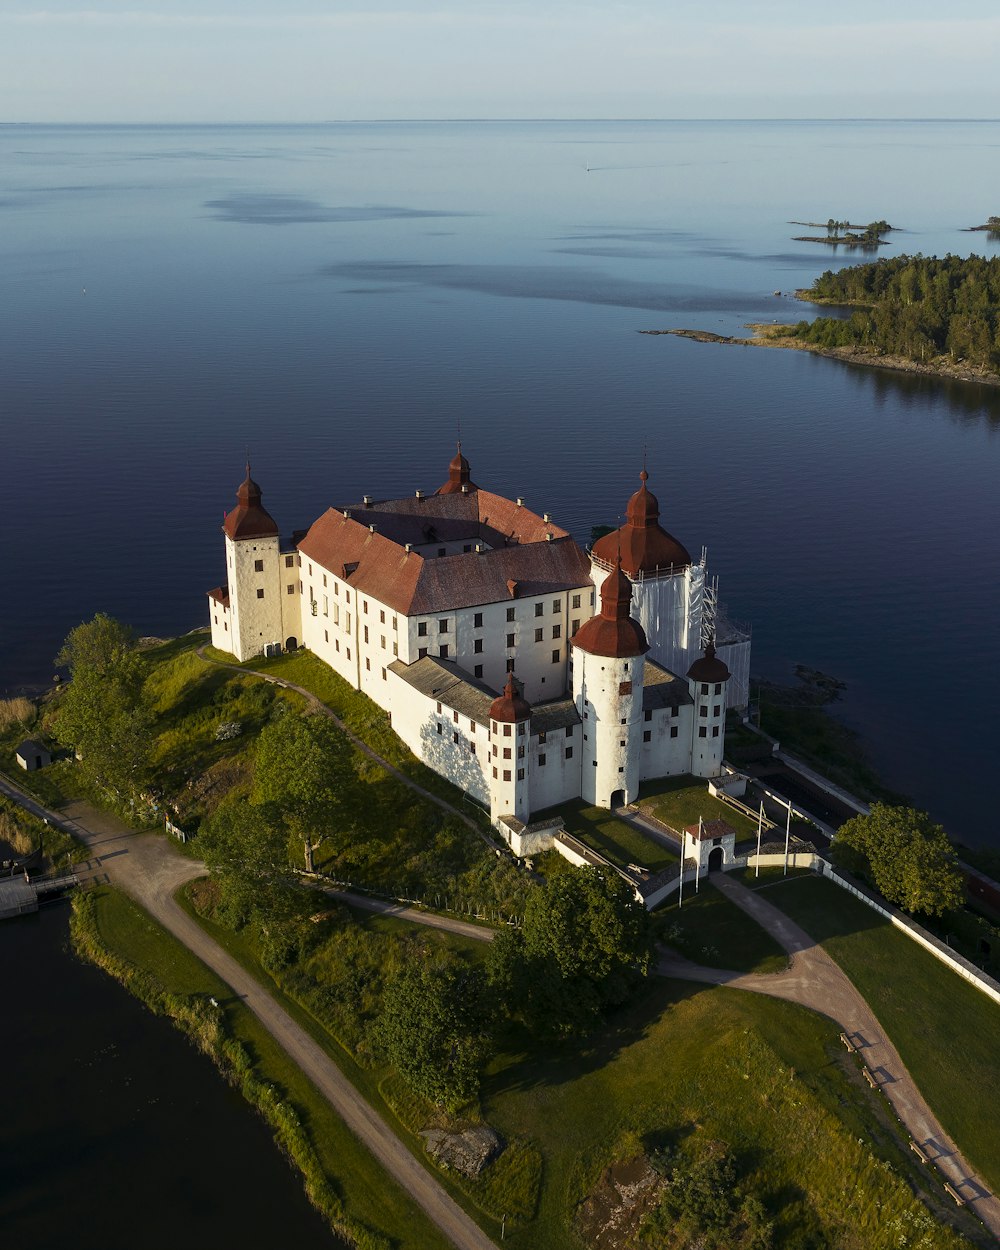 Eine Luftaufnahme eines Schlosses auf einer kleinen Insel